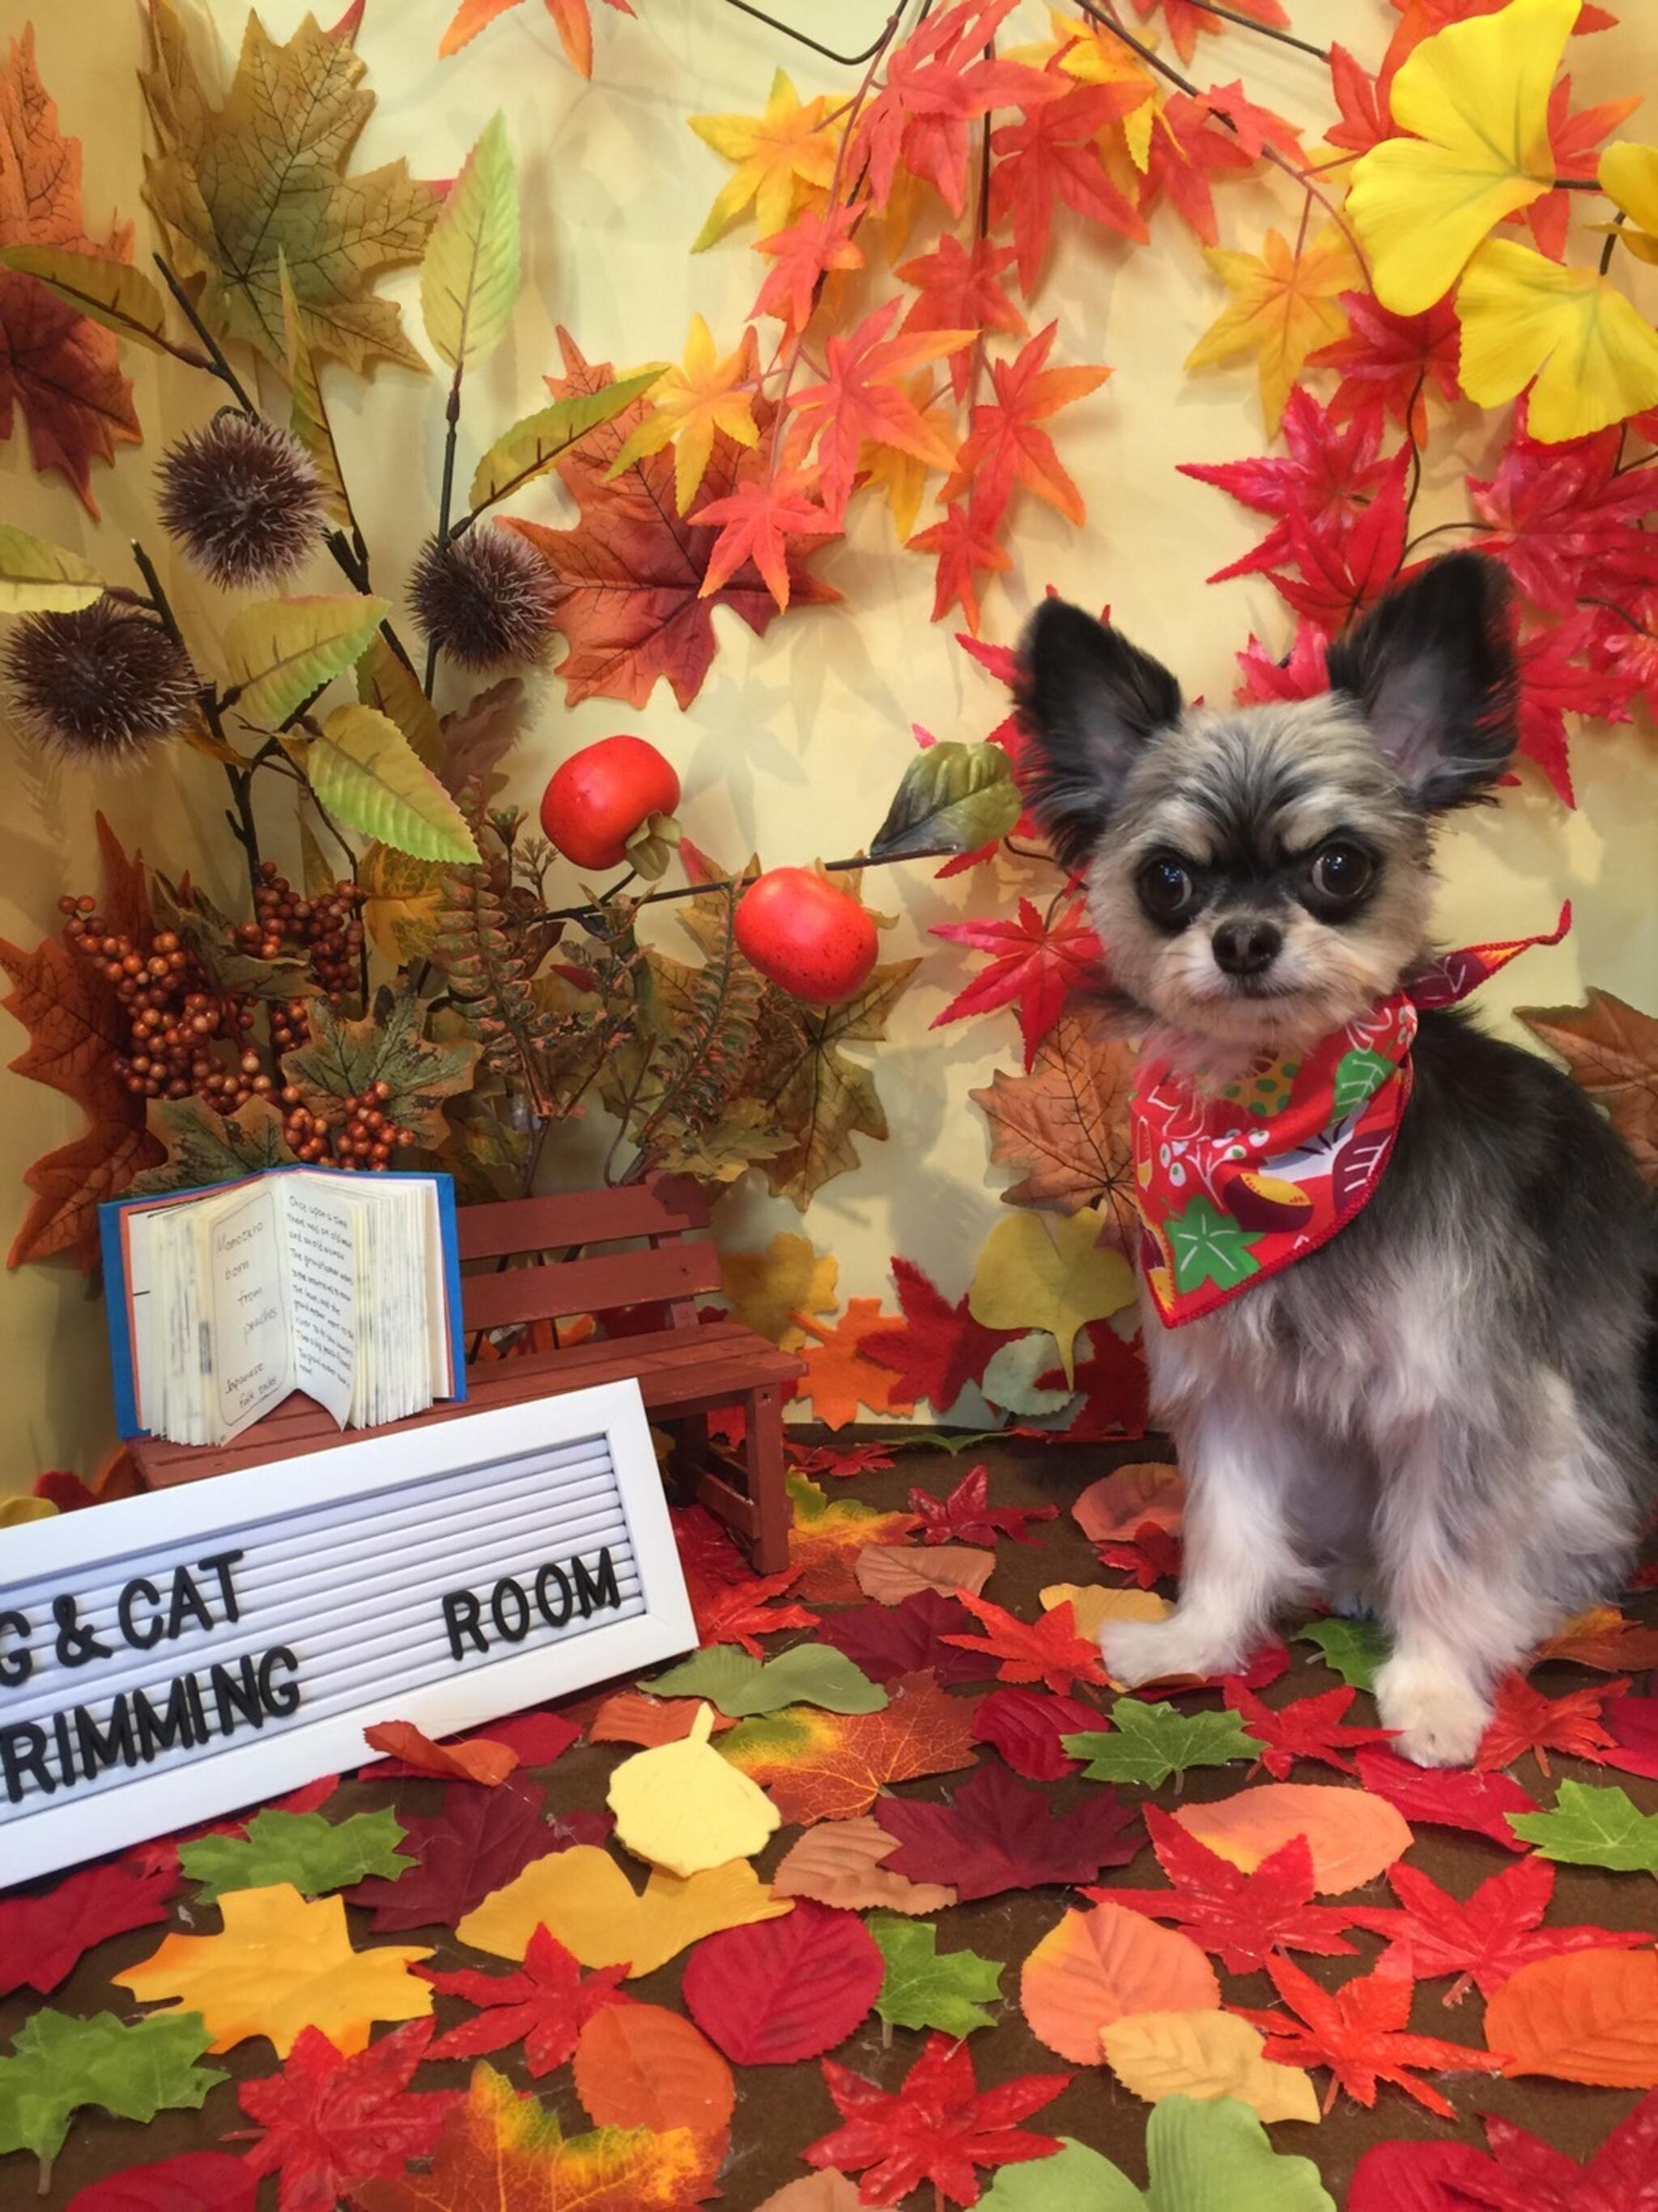 dog＆cat trimming ROOMからのお知らせ(11月のテーマ『紅葉と読書』)に関する写真